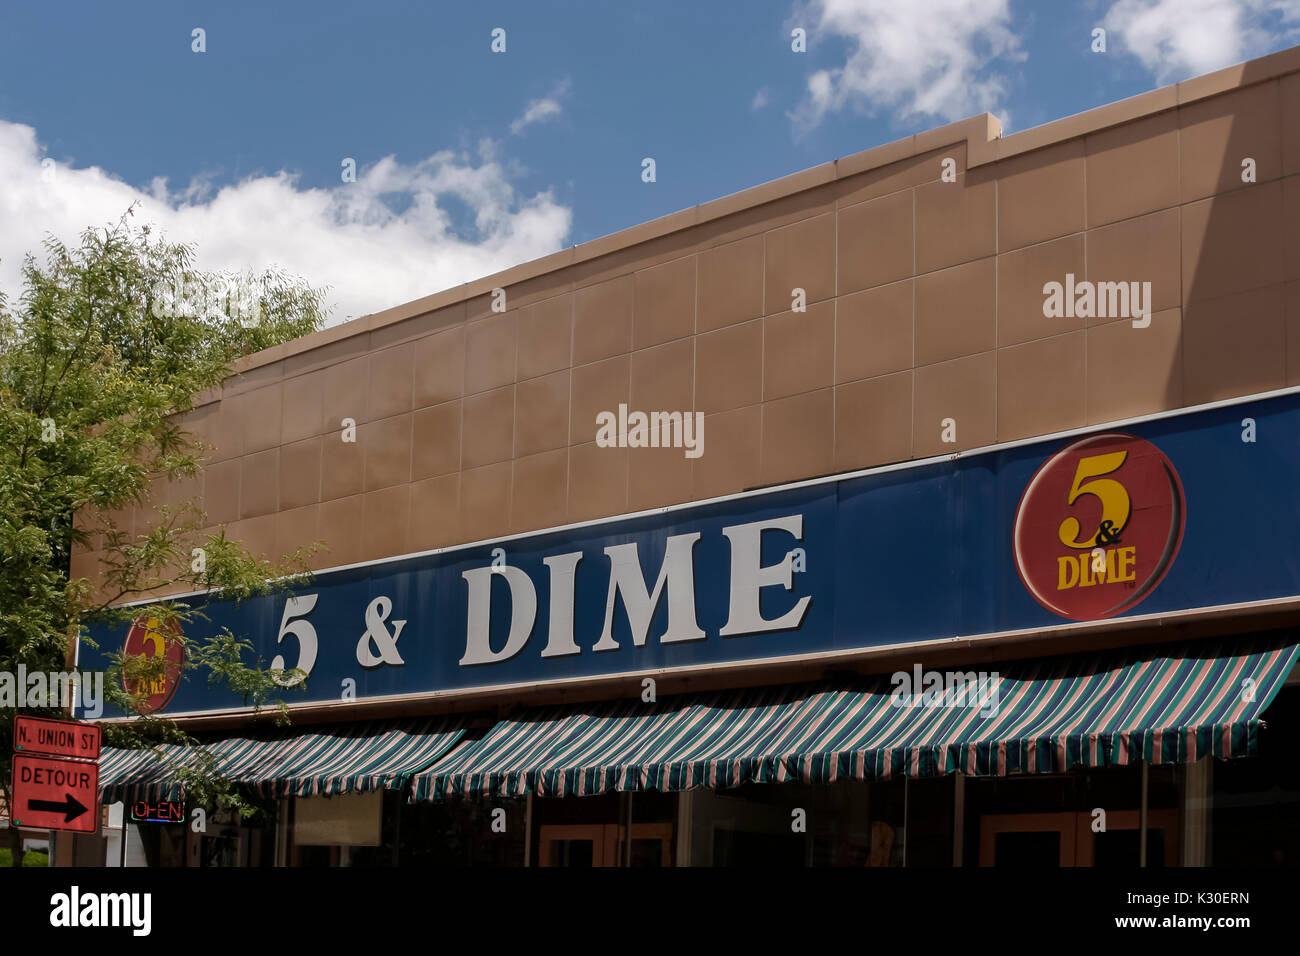 5&Dime Store anmelden bleibt immer noch aus den frühen 1900er Jahren, wenn der Speicher viele verschiedene Arten von Gegenständen, die für fünf oder zehn Cent verkauft. Stockfoto